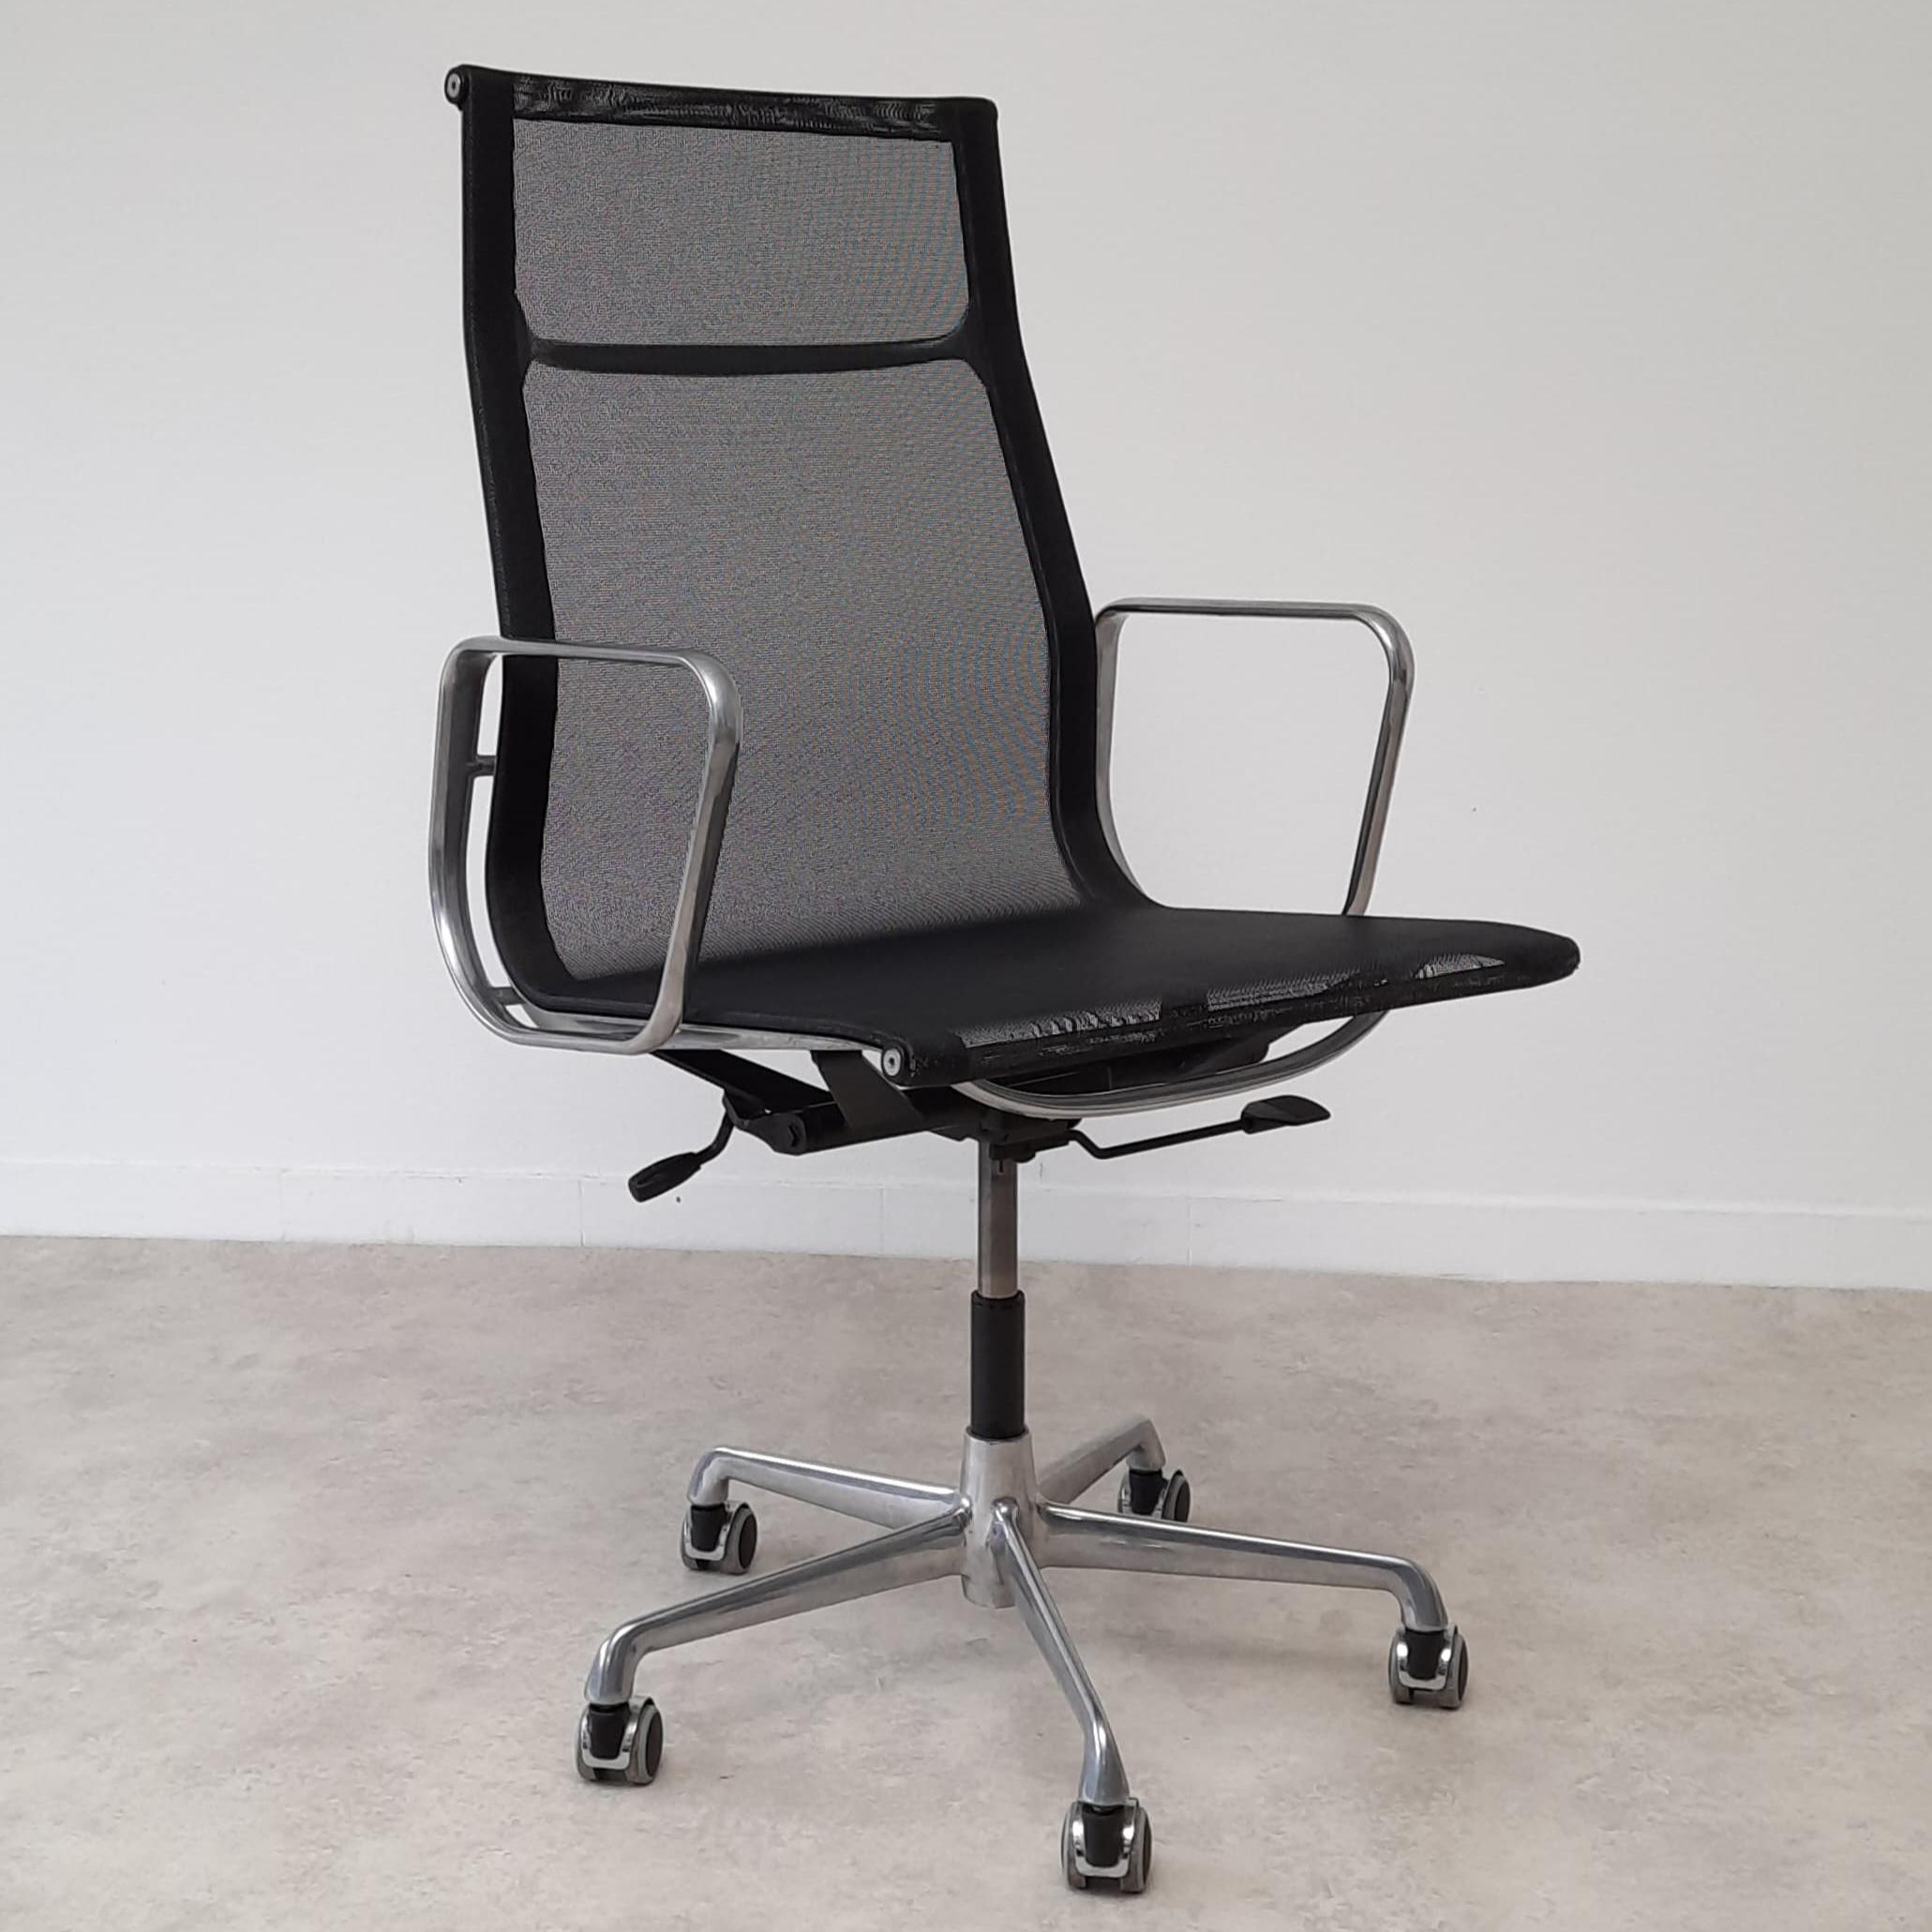 
Wunderschöner Bürostuhl, entworfen von Charles Eames für Hermann Miller, Modell EA 119.

Der Sessel wurde in den 1960er Jahren von ICF Padova gebaut, der einzigen Firma, die eine Konstruktionslizenz von Hermann Miller besaß, dieselben Materialien,